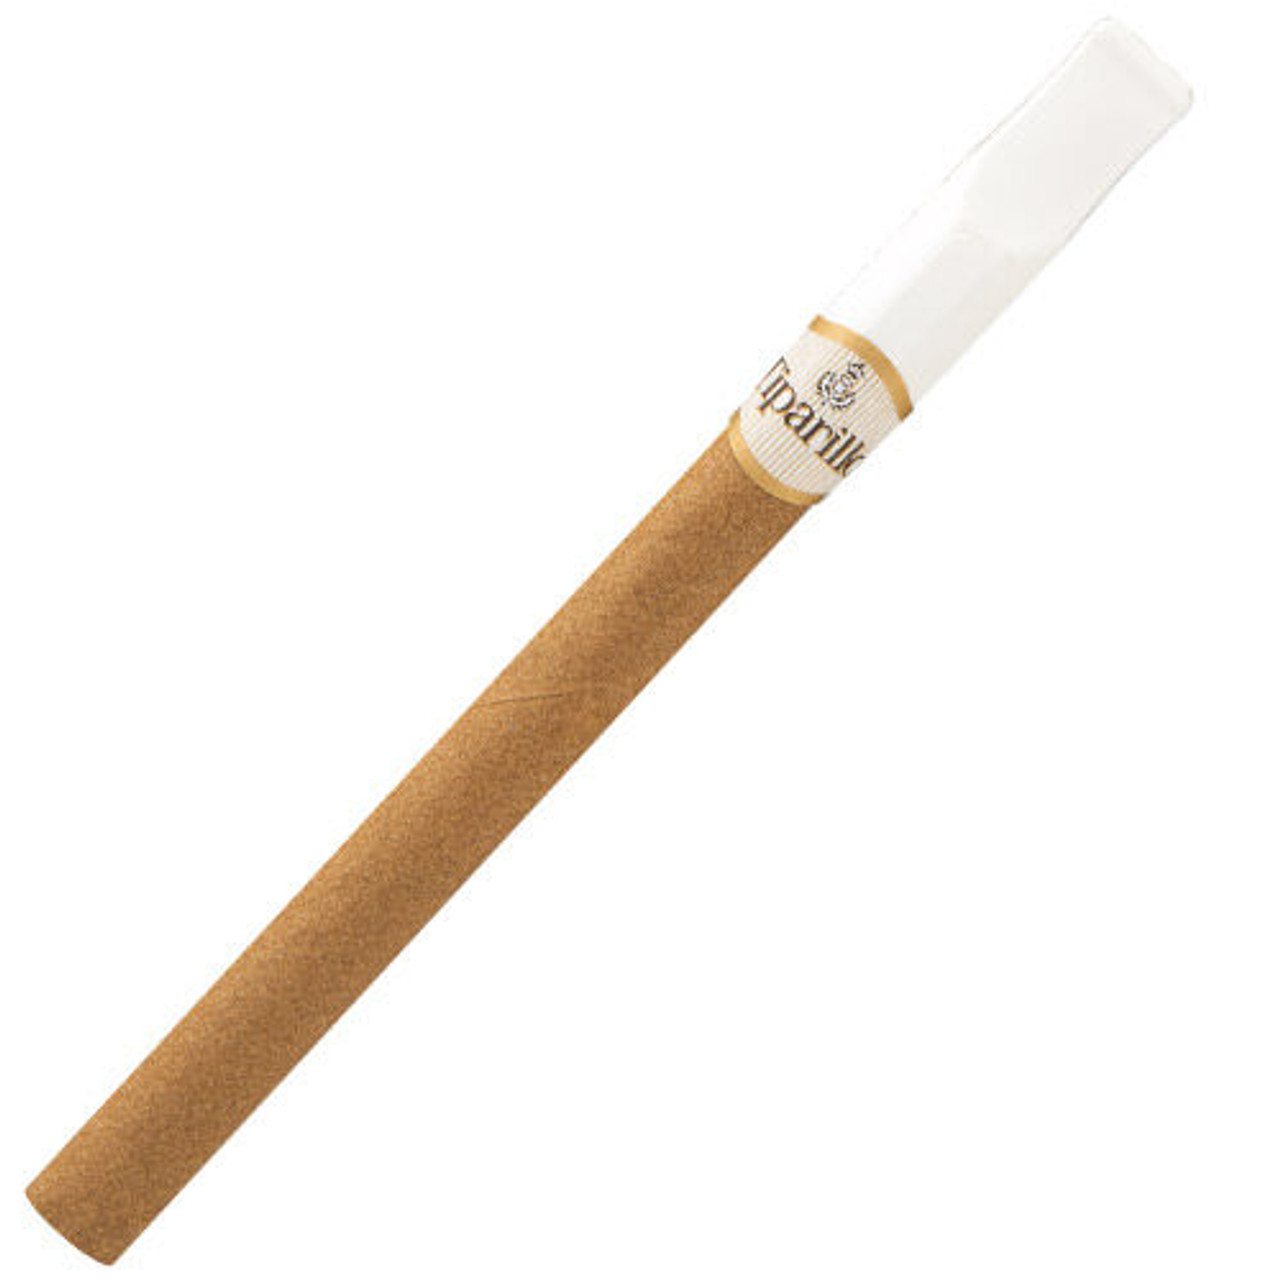 Tiparillo Regular Cigars - 5 x 30 Single